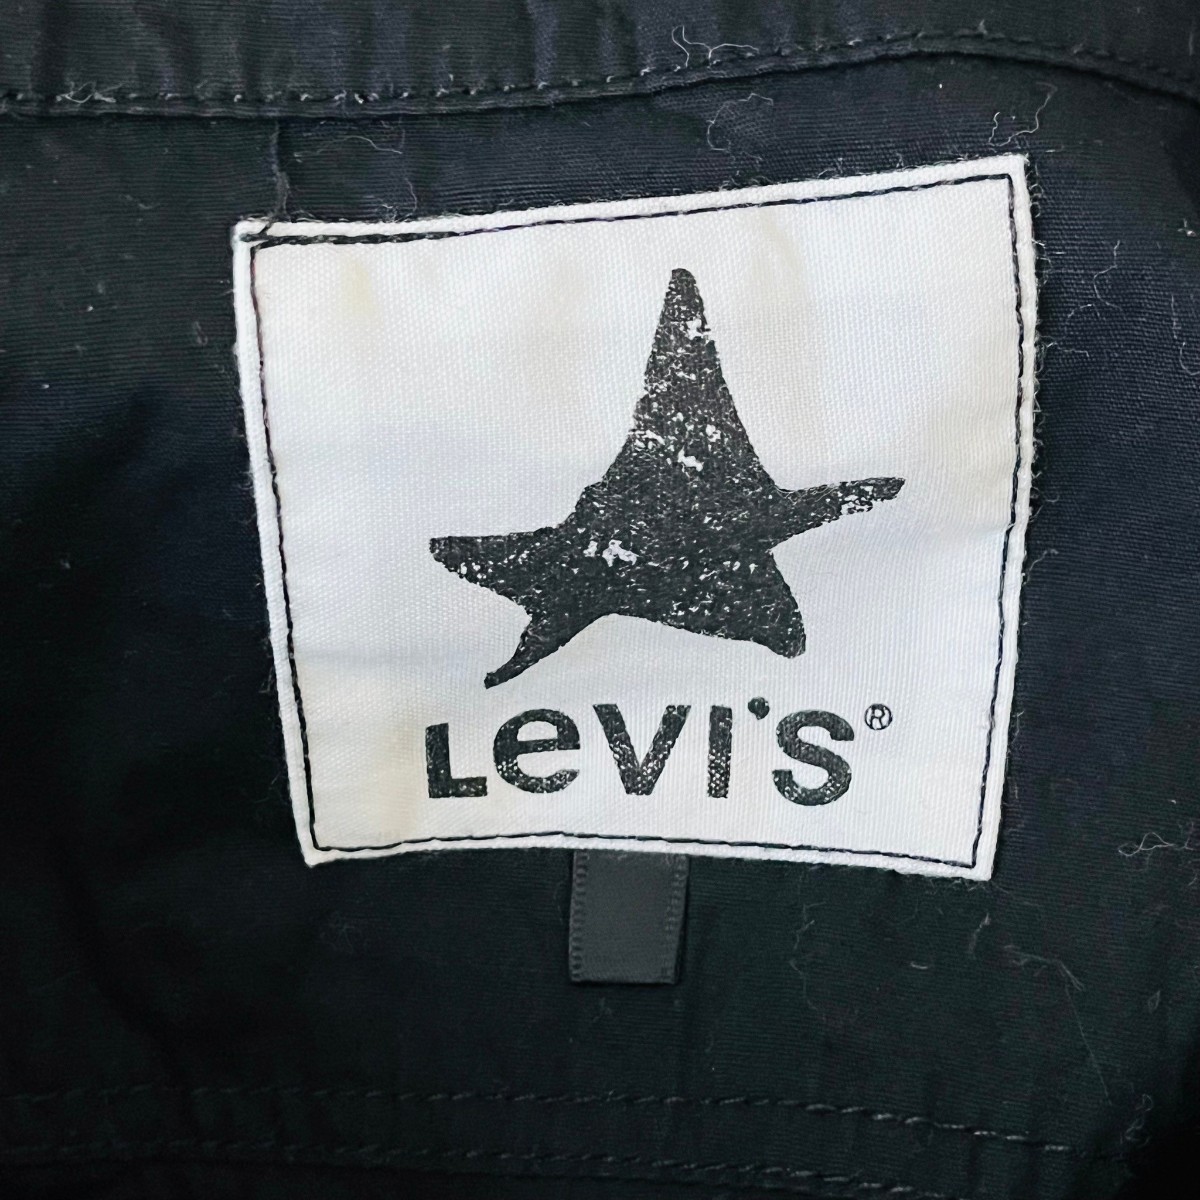  F8762cL Levi's リーバイス サイズ160cm キッズ 長袖シャツ ワークシャツ ブラック 黒 子供服 アメカジ ミリタリー 刺繍 綿100% _画像6